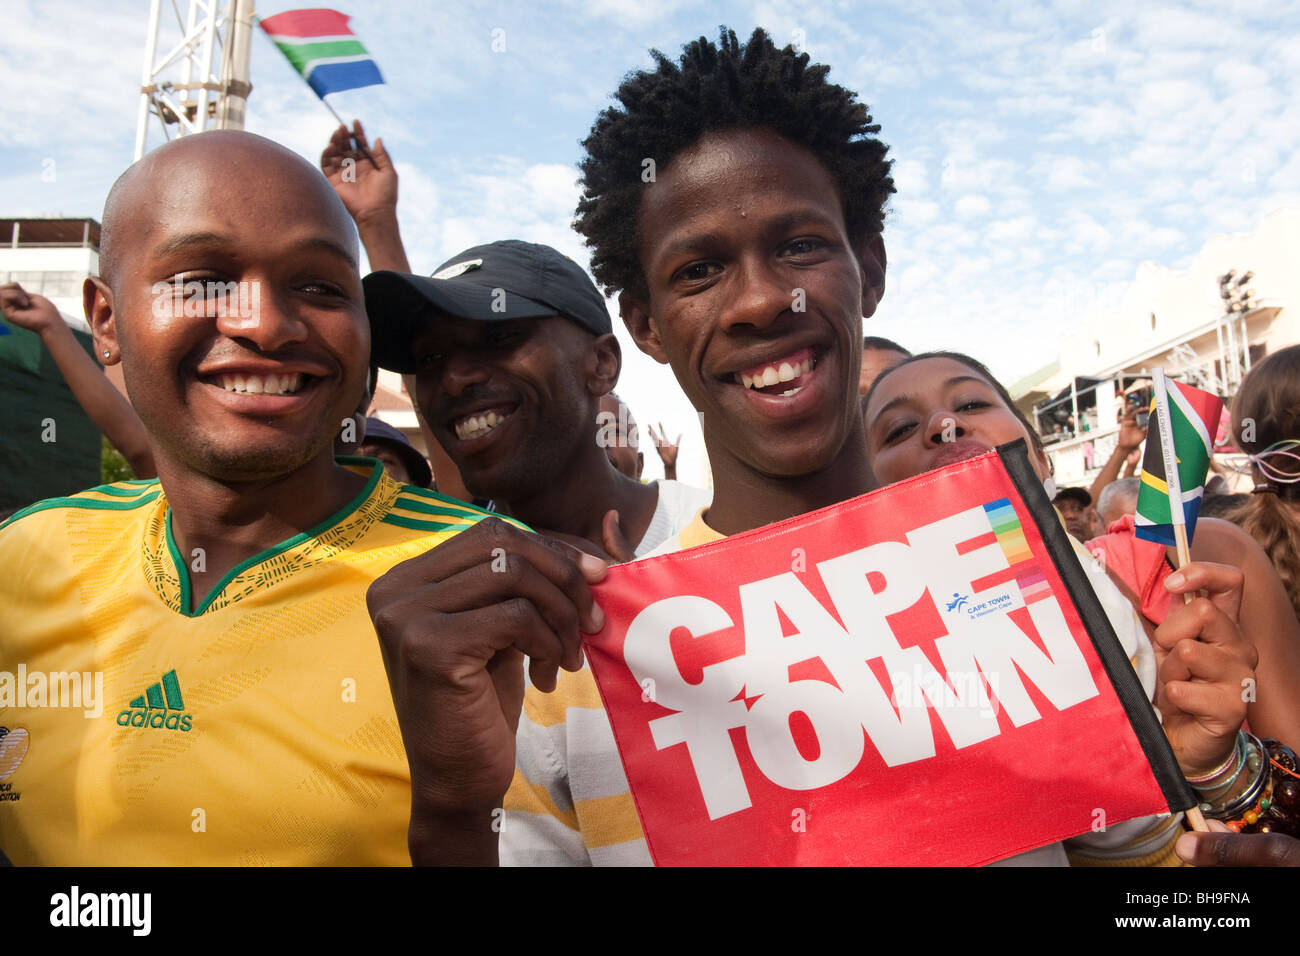 Football fans célébrer sur le ventilateur de la FIFA Mile à Cape Town Afrique du Sud Banque D'Images